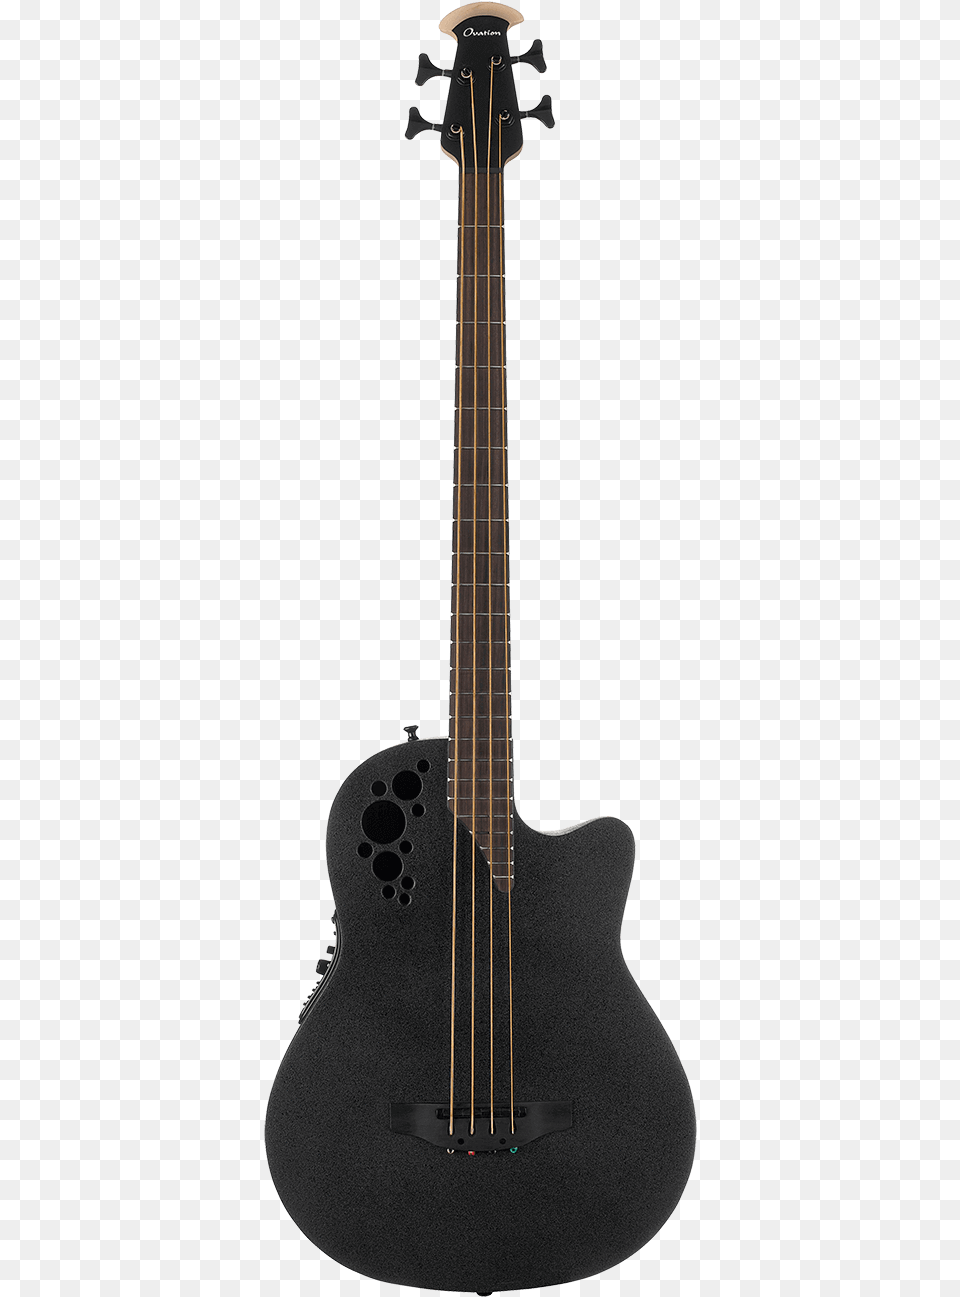 Mod Tx 4 String Bass Ovation Bass Guitar, Bass Guitar, Musical Instrument Free Transparent Png